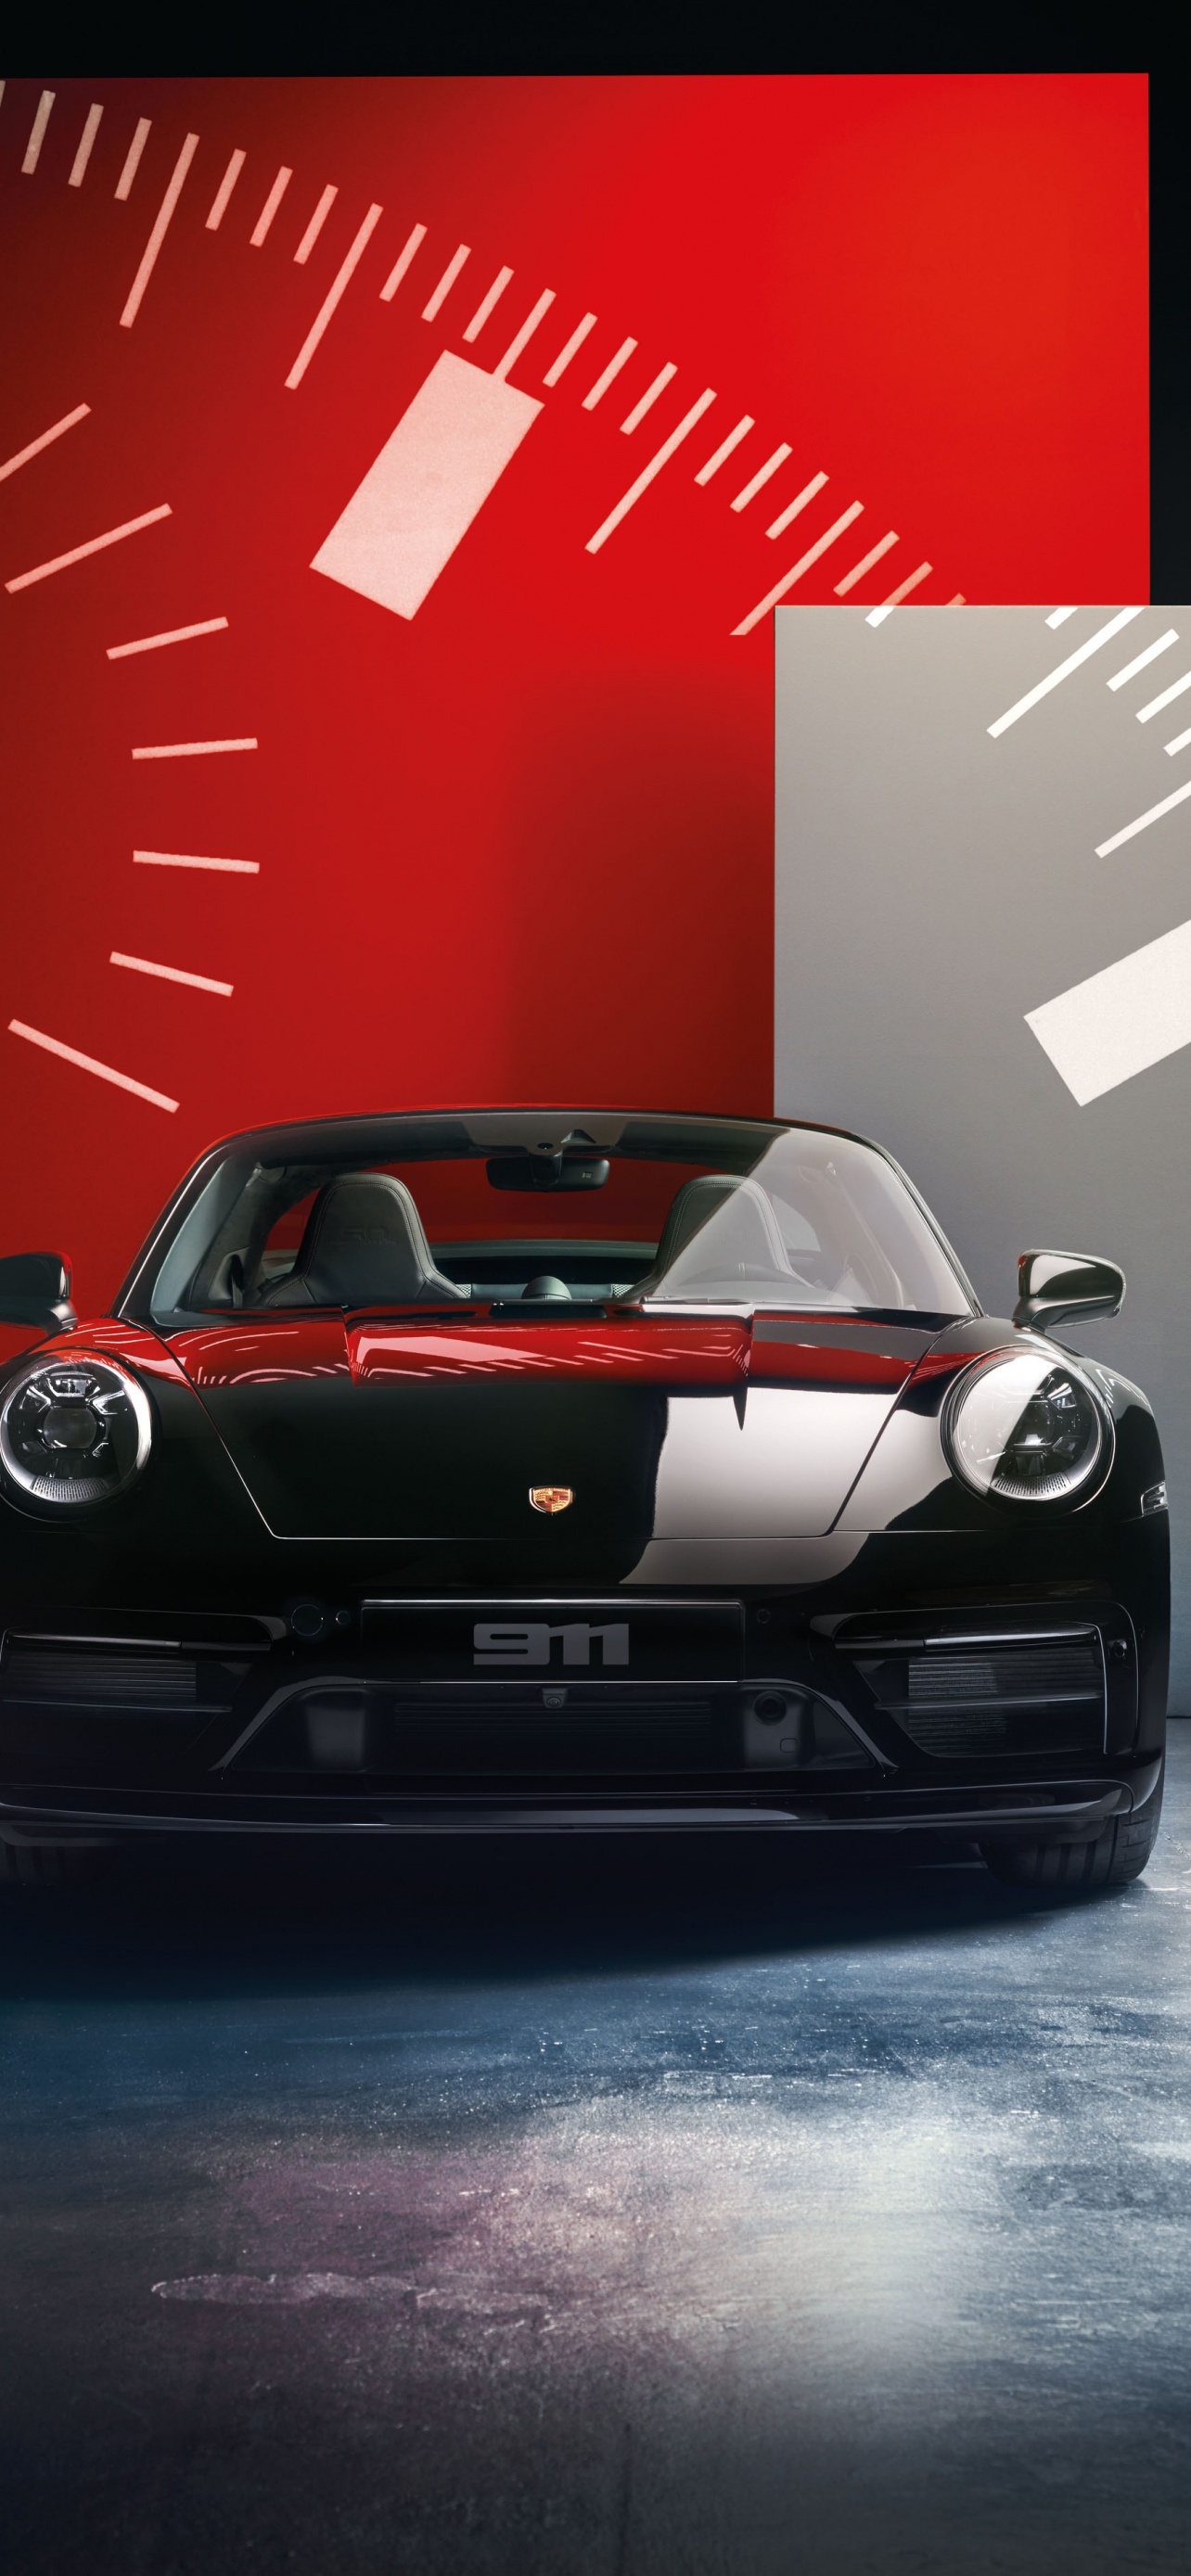 Porsche 911 Targa 4 GTS Edition - Thiết kế độc đáo cùng kiểu dáng thể thao, Porsche 911 Targa 4 GTS Edition là sự lựa chọn hoàn hảo cho những ai yêu thích tốc độ. Hãy xem hình ảnh để cảm nhận sự khác biệt và đẳng cấp của chiếc xe này.